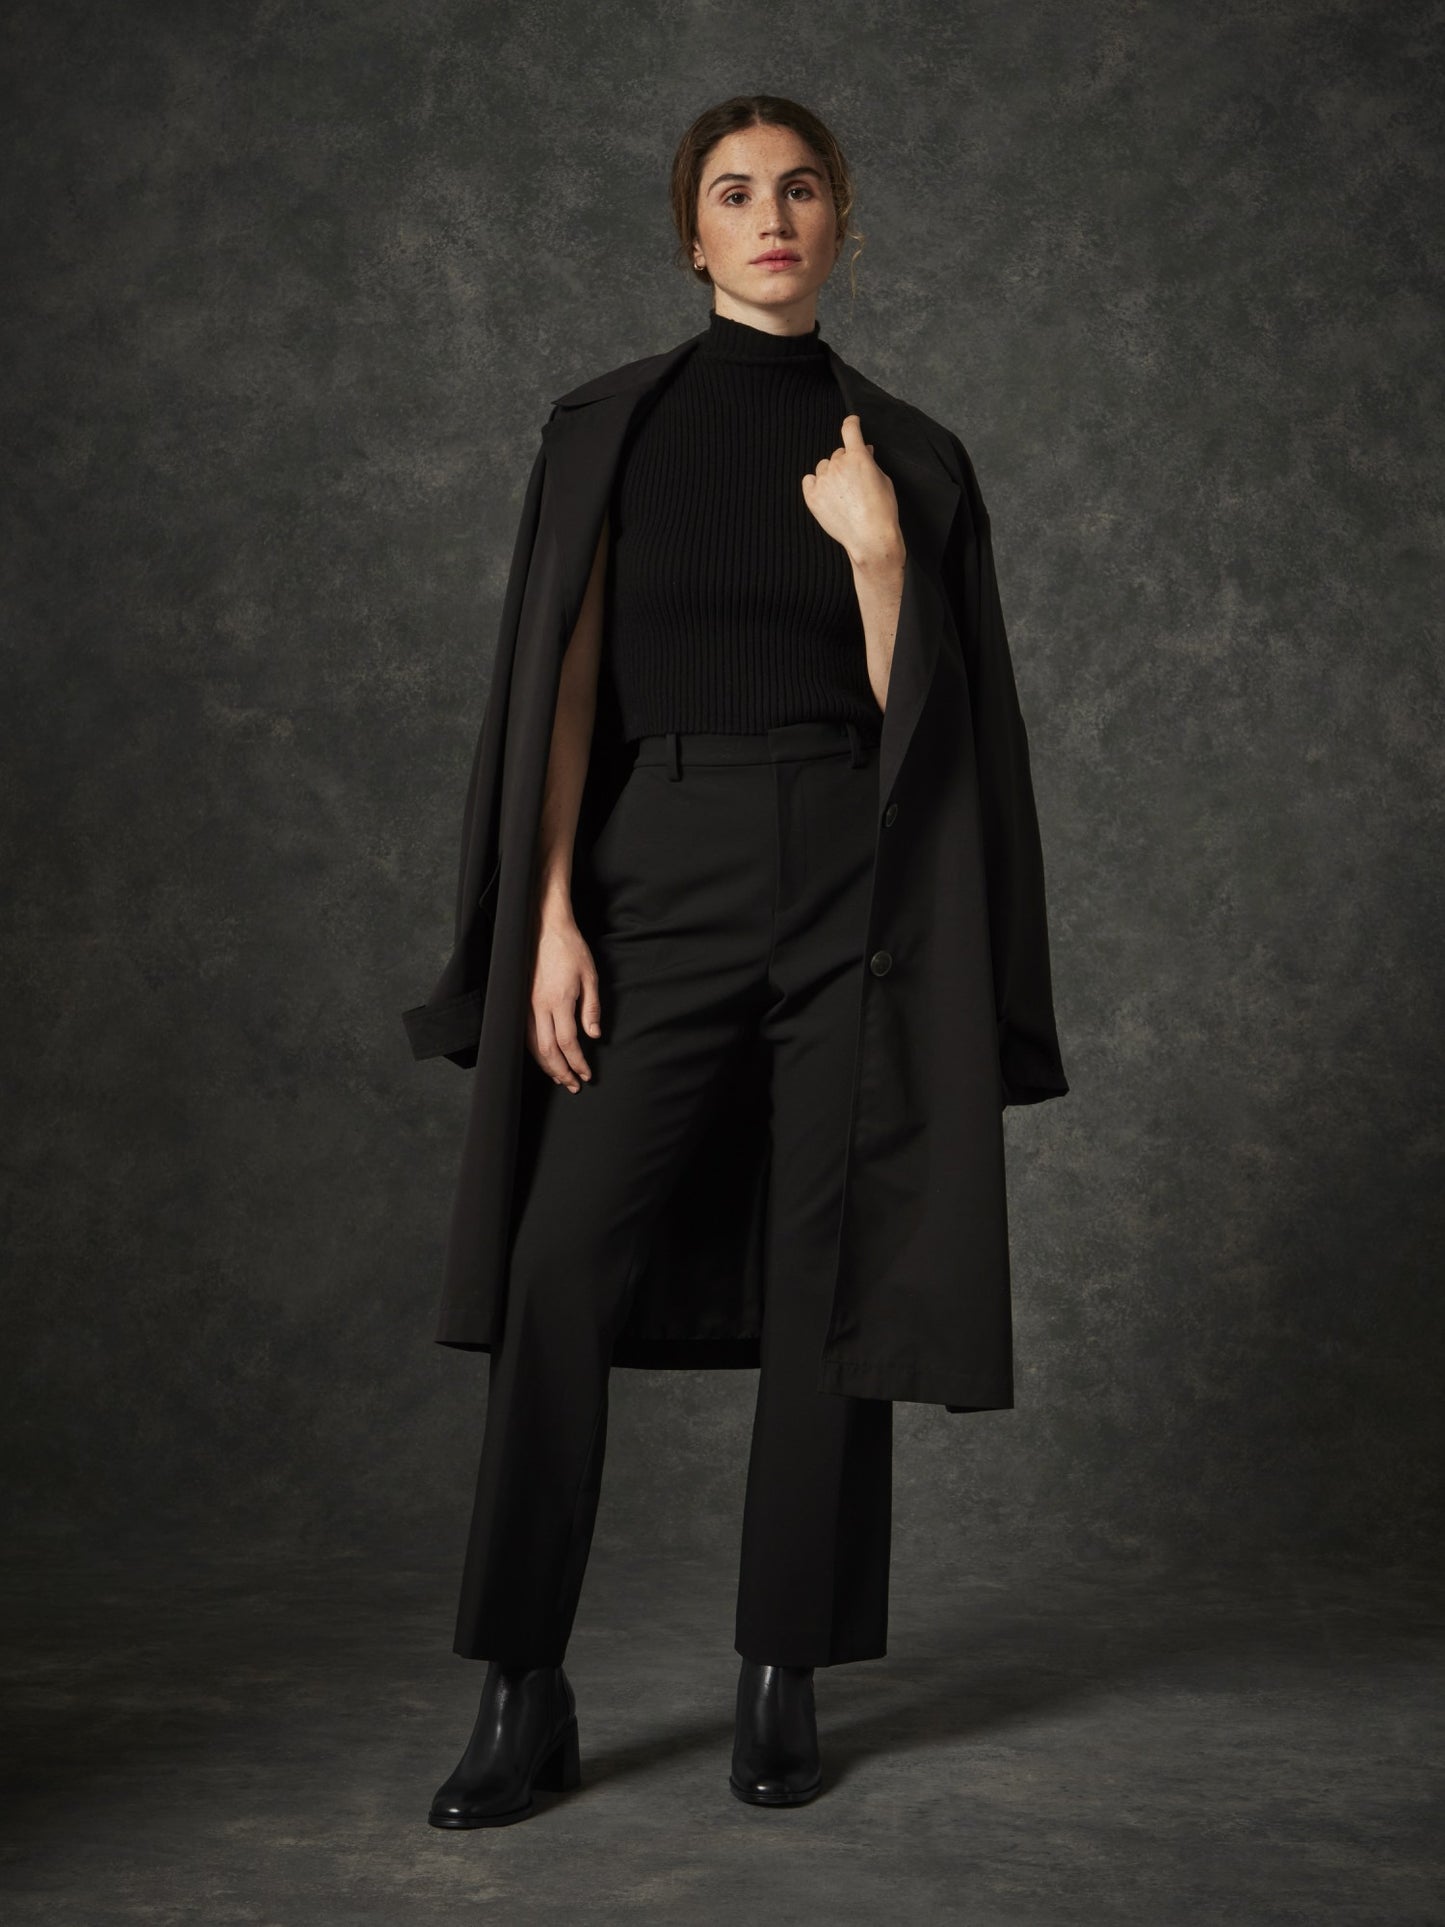 Botines De La Marca Regarde Le Ciel Para Mujer Modelo Sisko01- Black En Color Negro